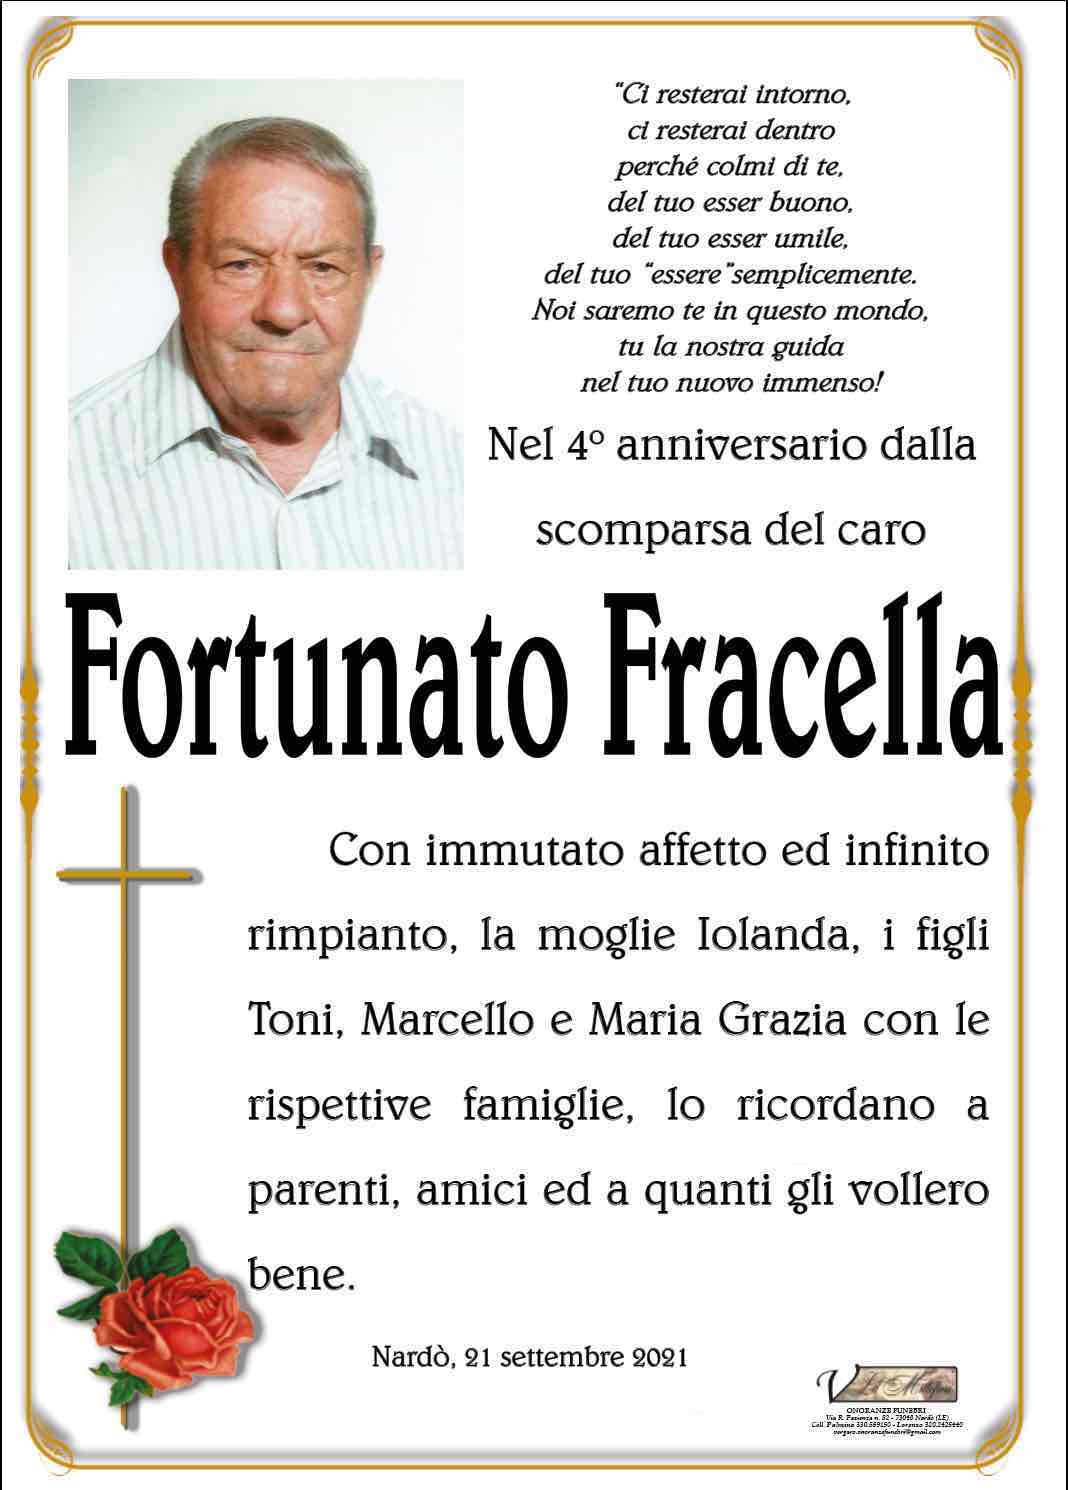 Fortunato Fracella